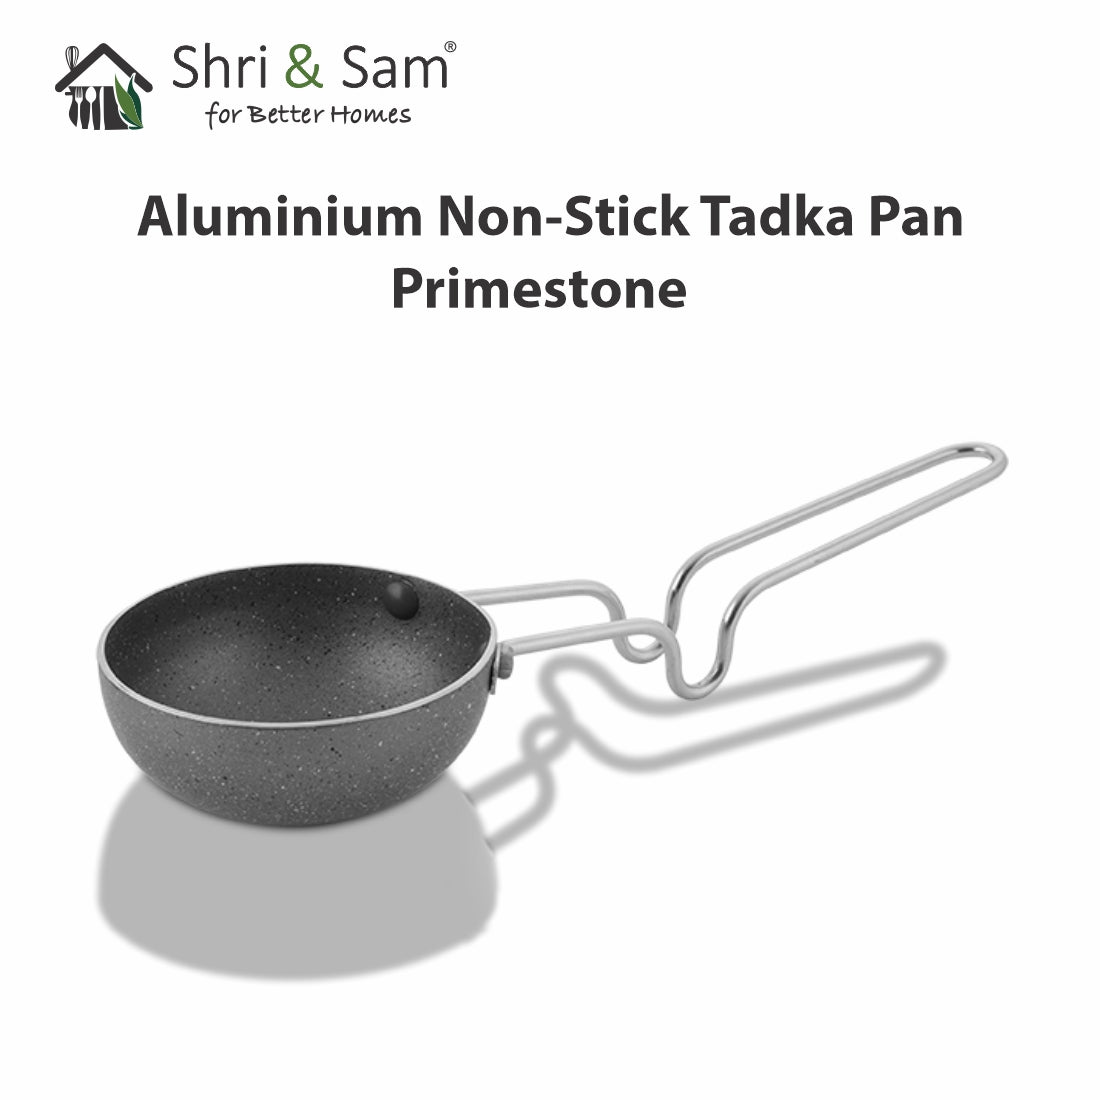 Aluminium Non-Stick Tadka Pan Primestone